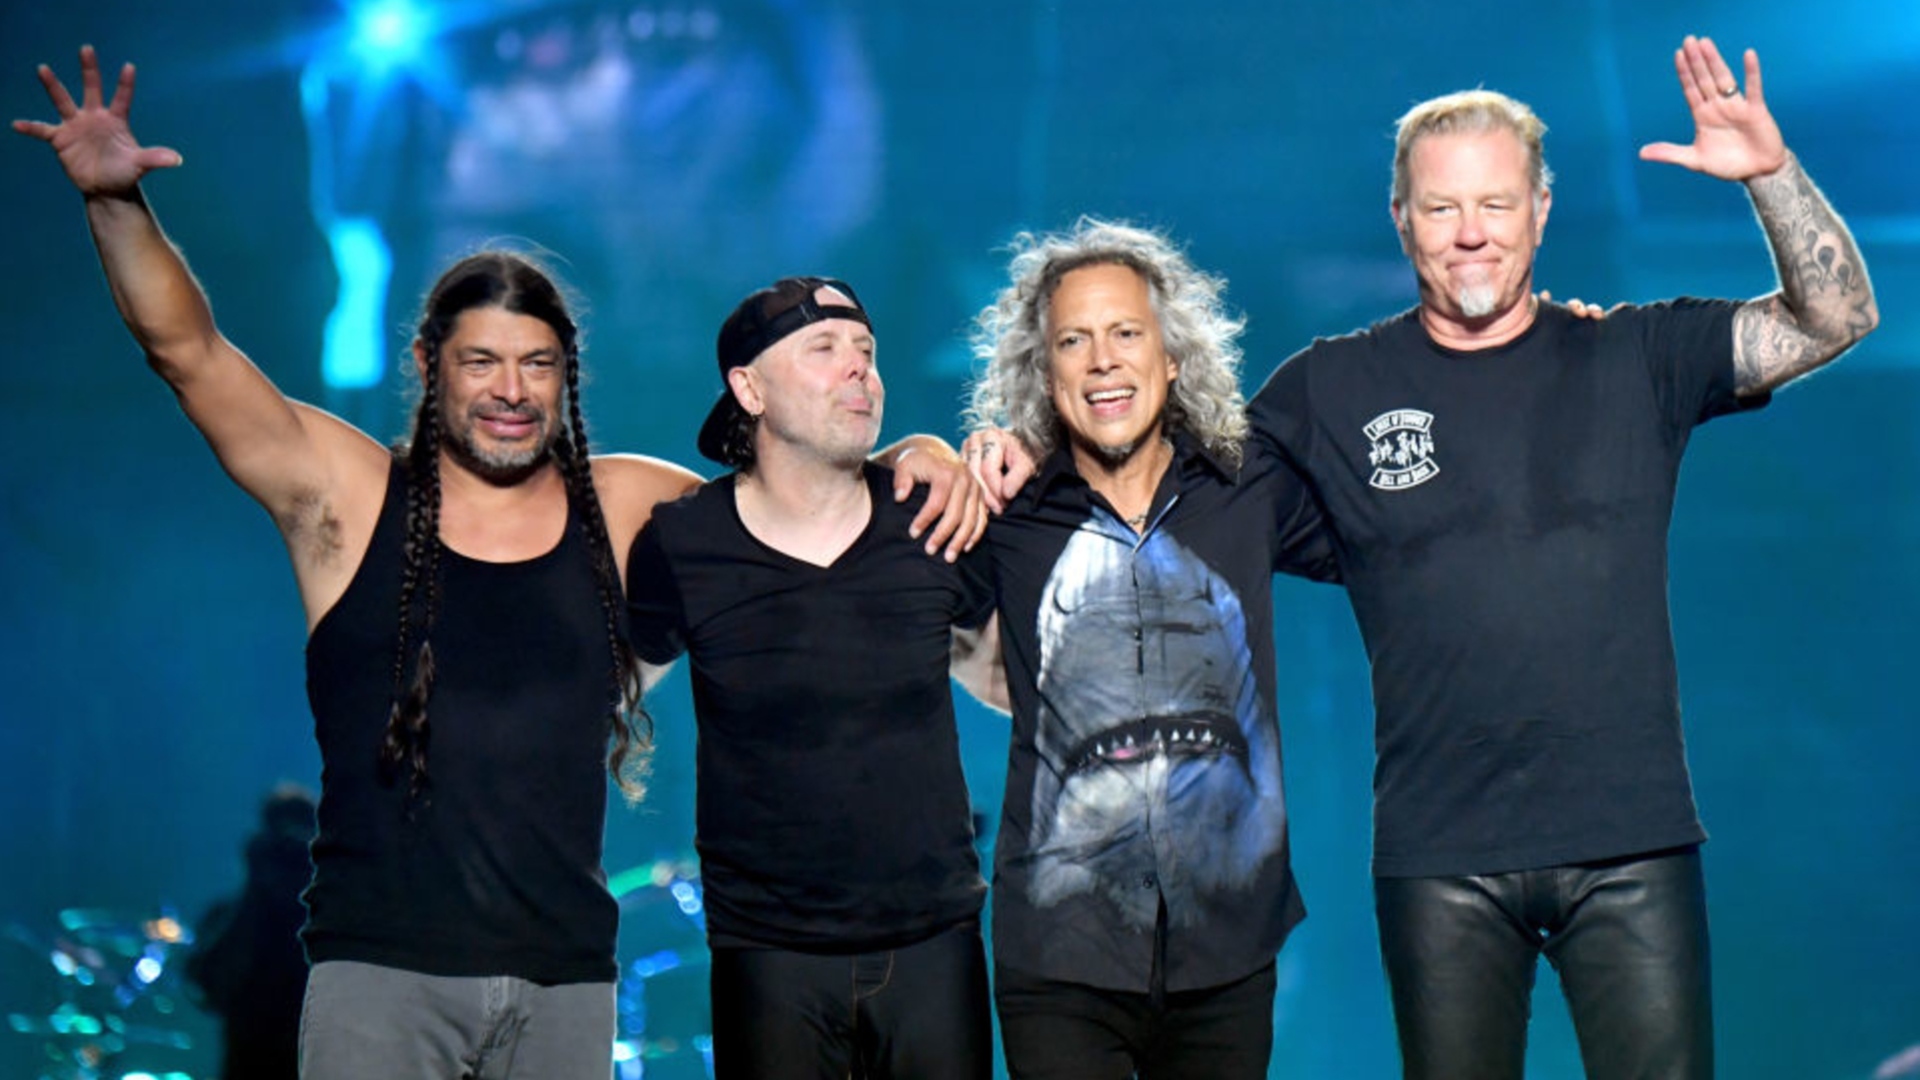 Carlos Geniso de DG Medios por Metallica: “Si esto hubiera sido un ente privado no habría problema”